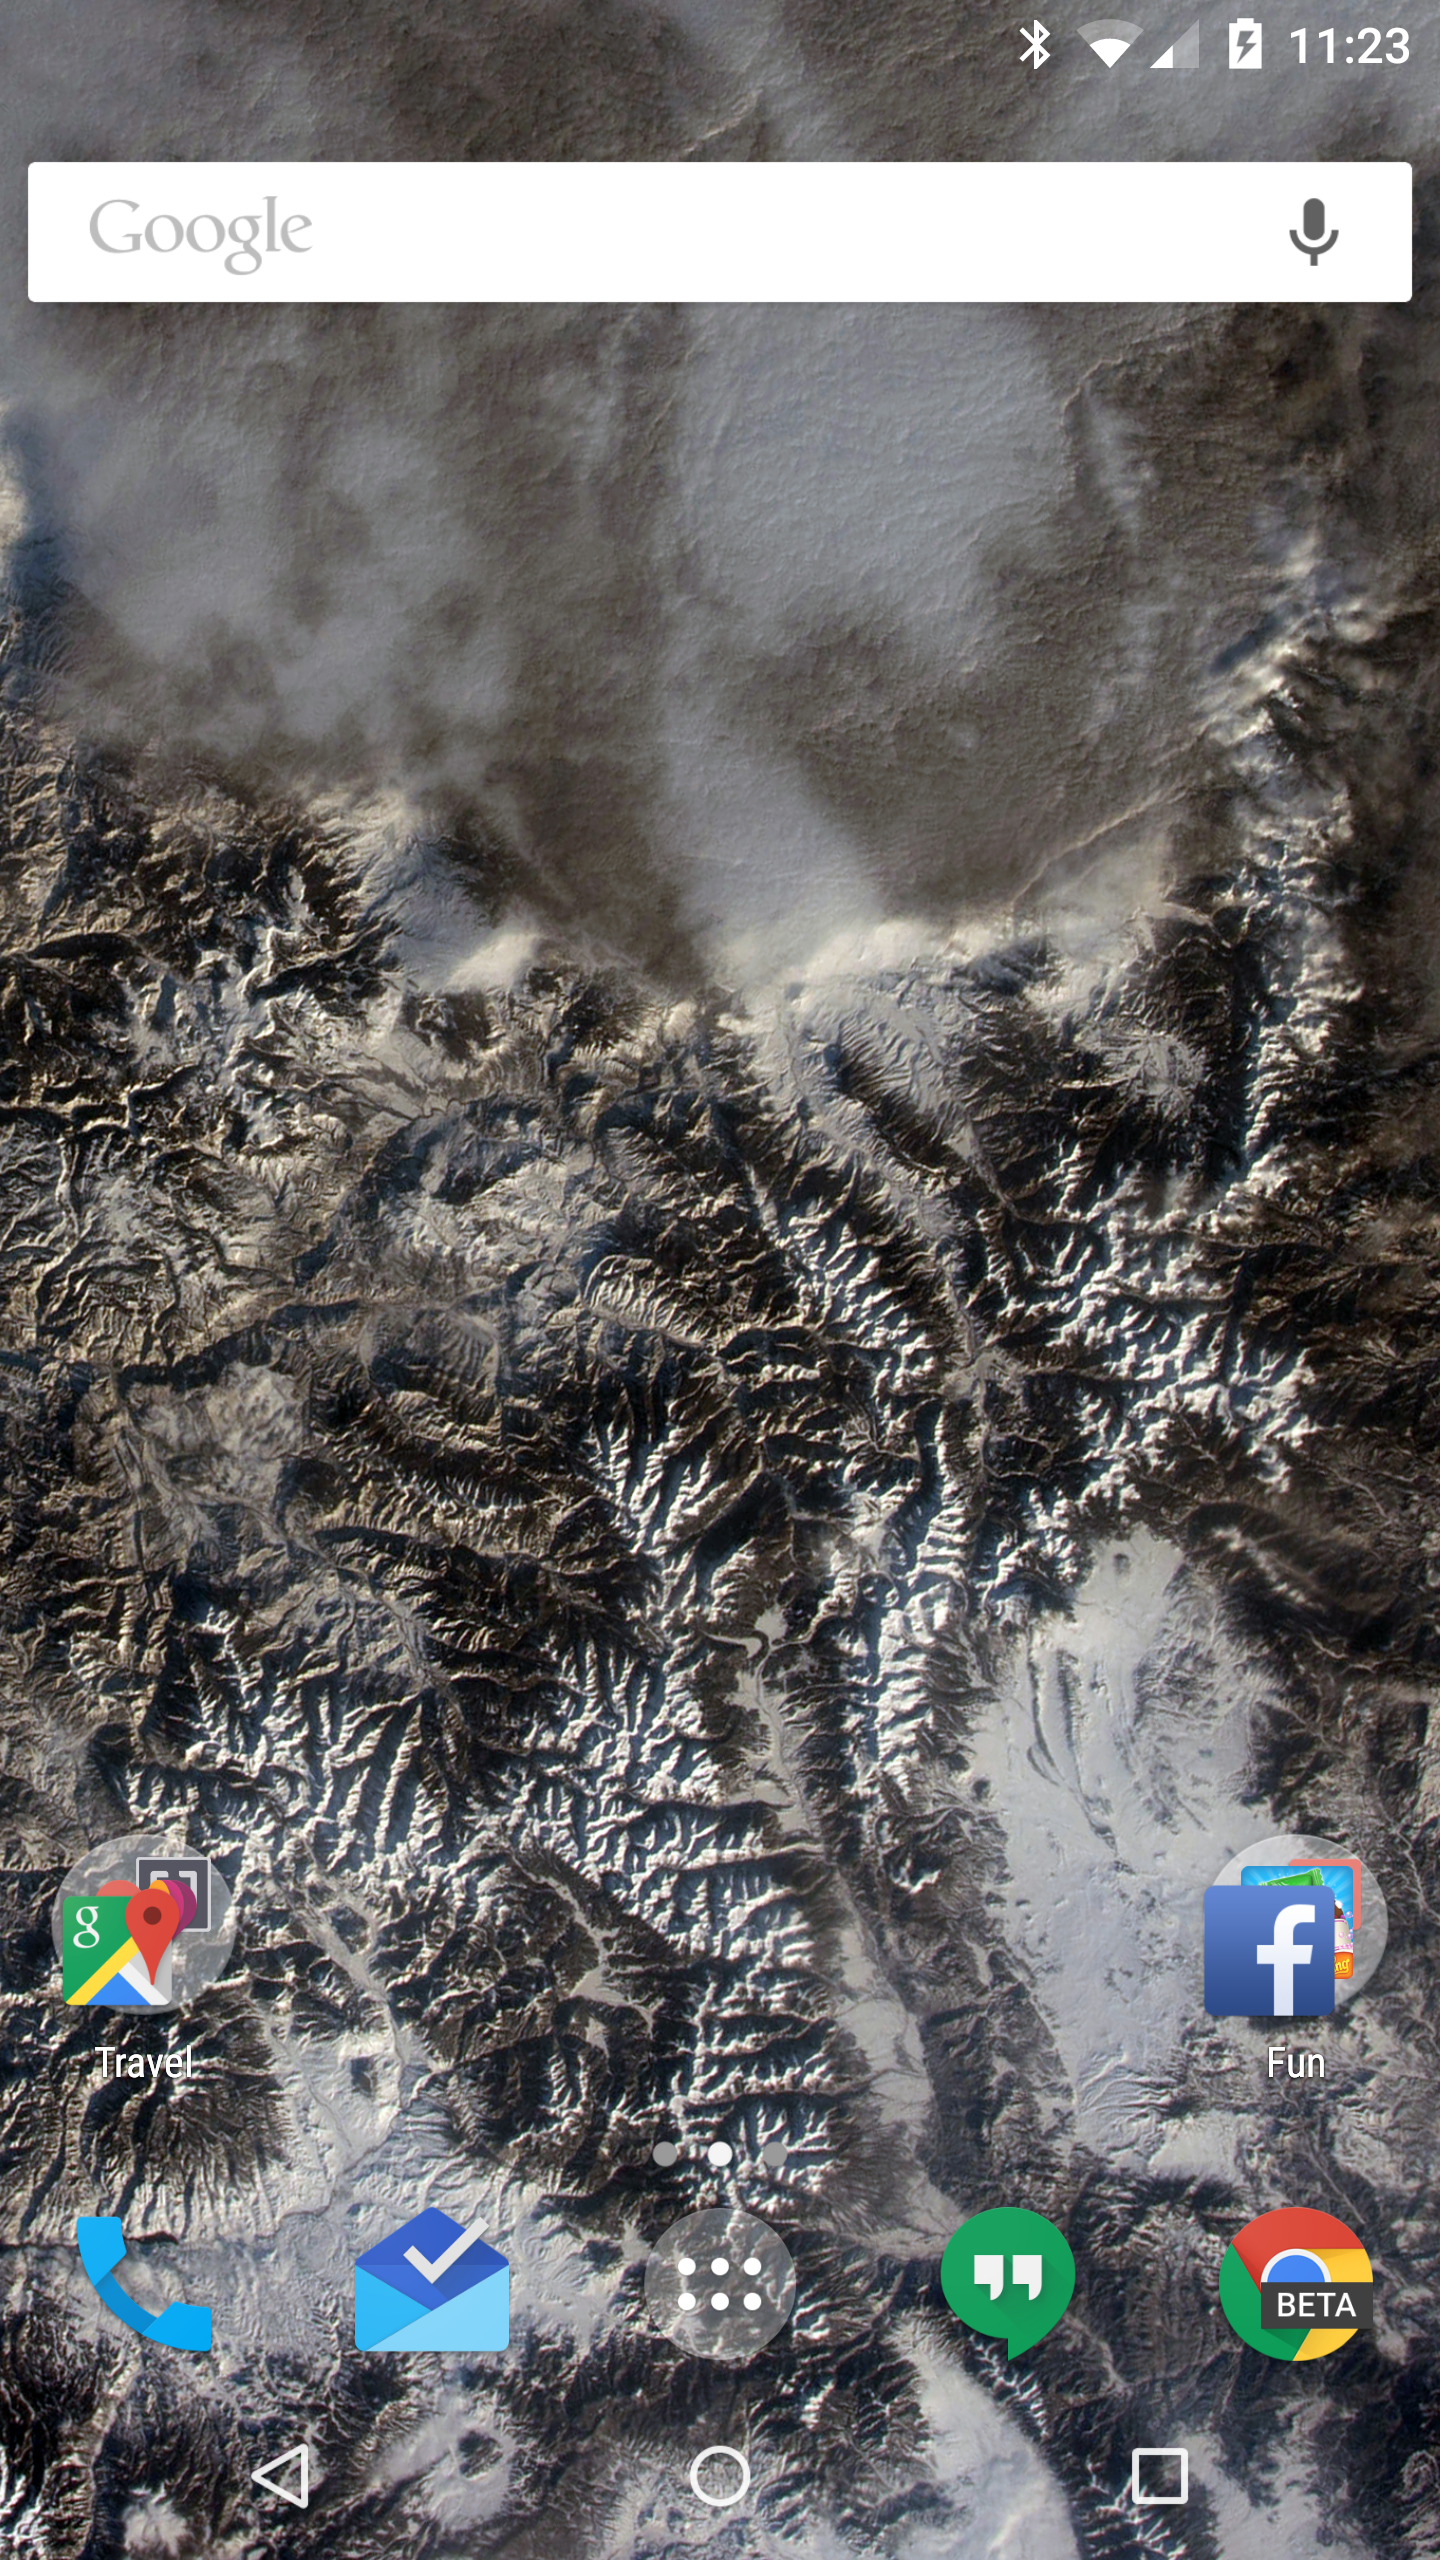 Android NASA wallpaper screenshot